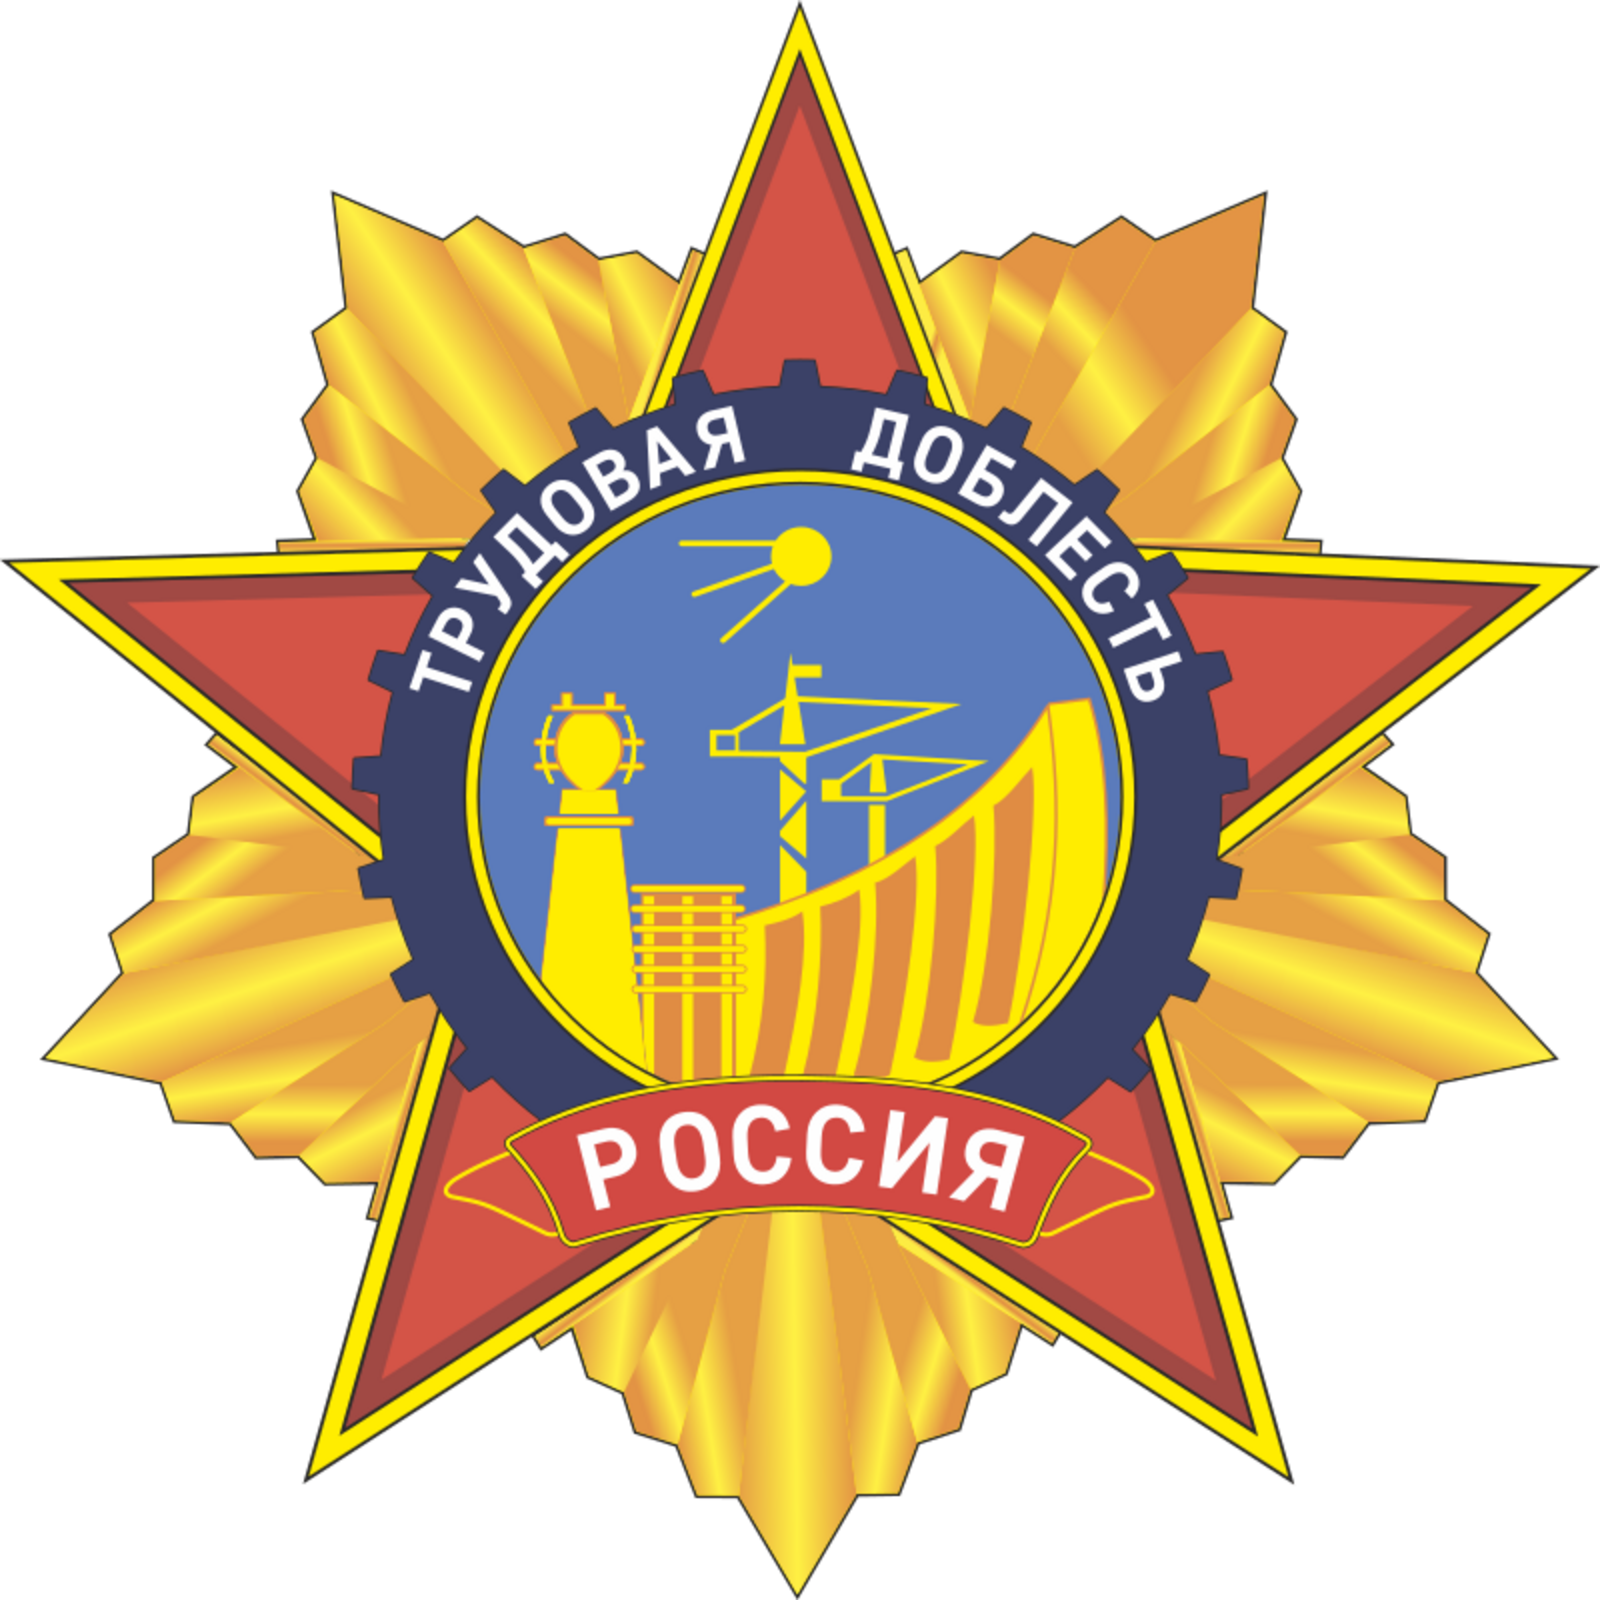 Еще 12 российских городов получат звание "Город трудовой доблести"